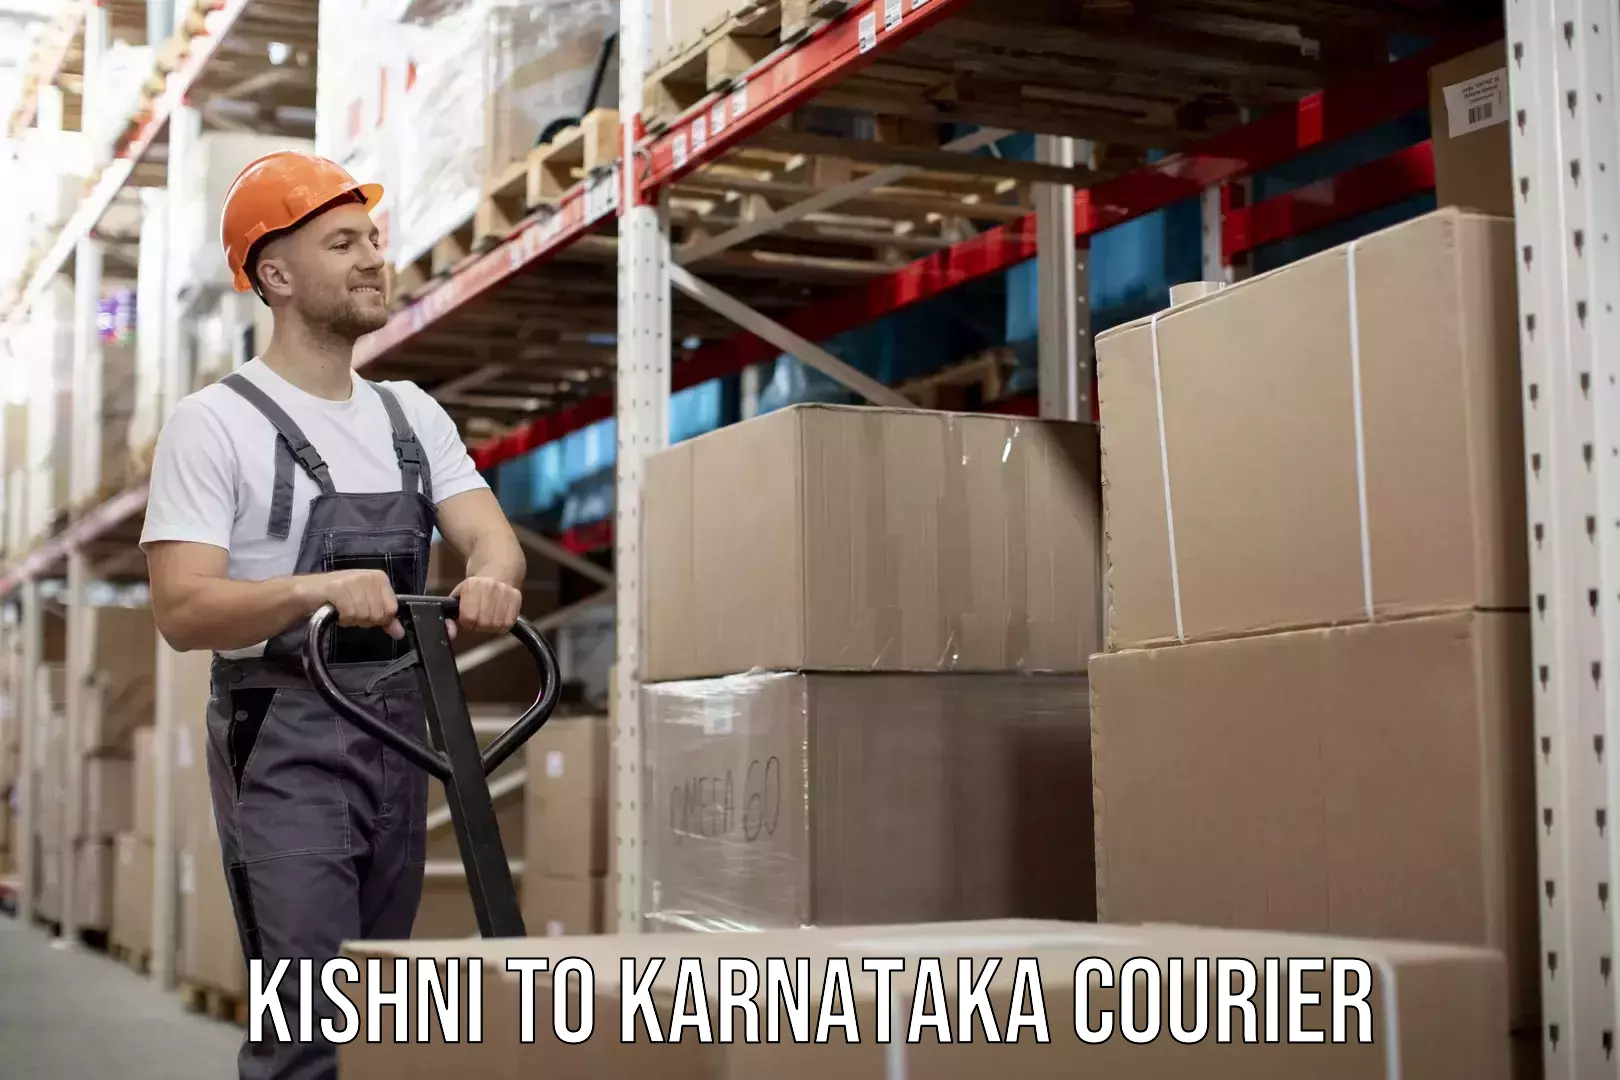 Furniture transport company Kishni to Karnataka